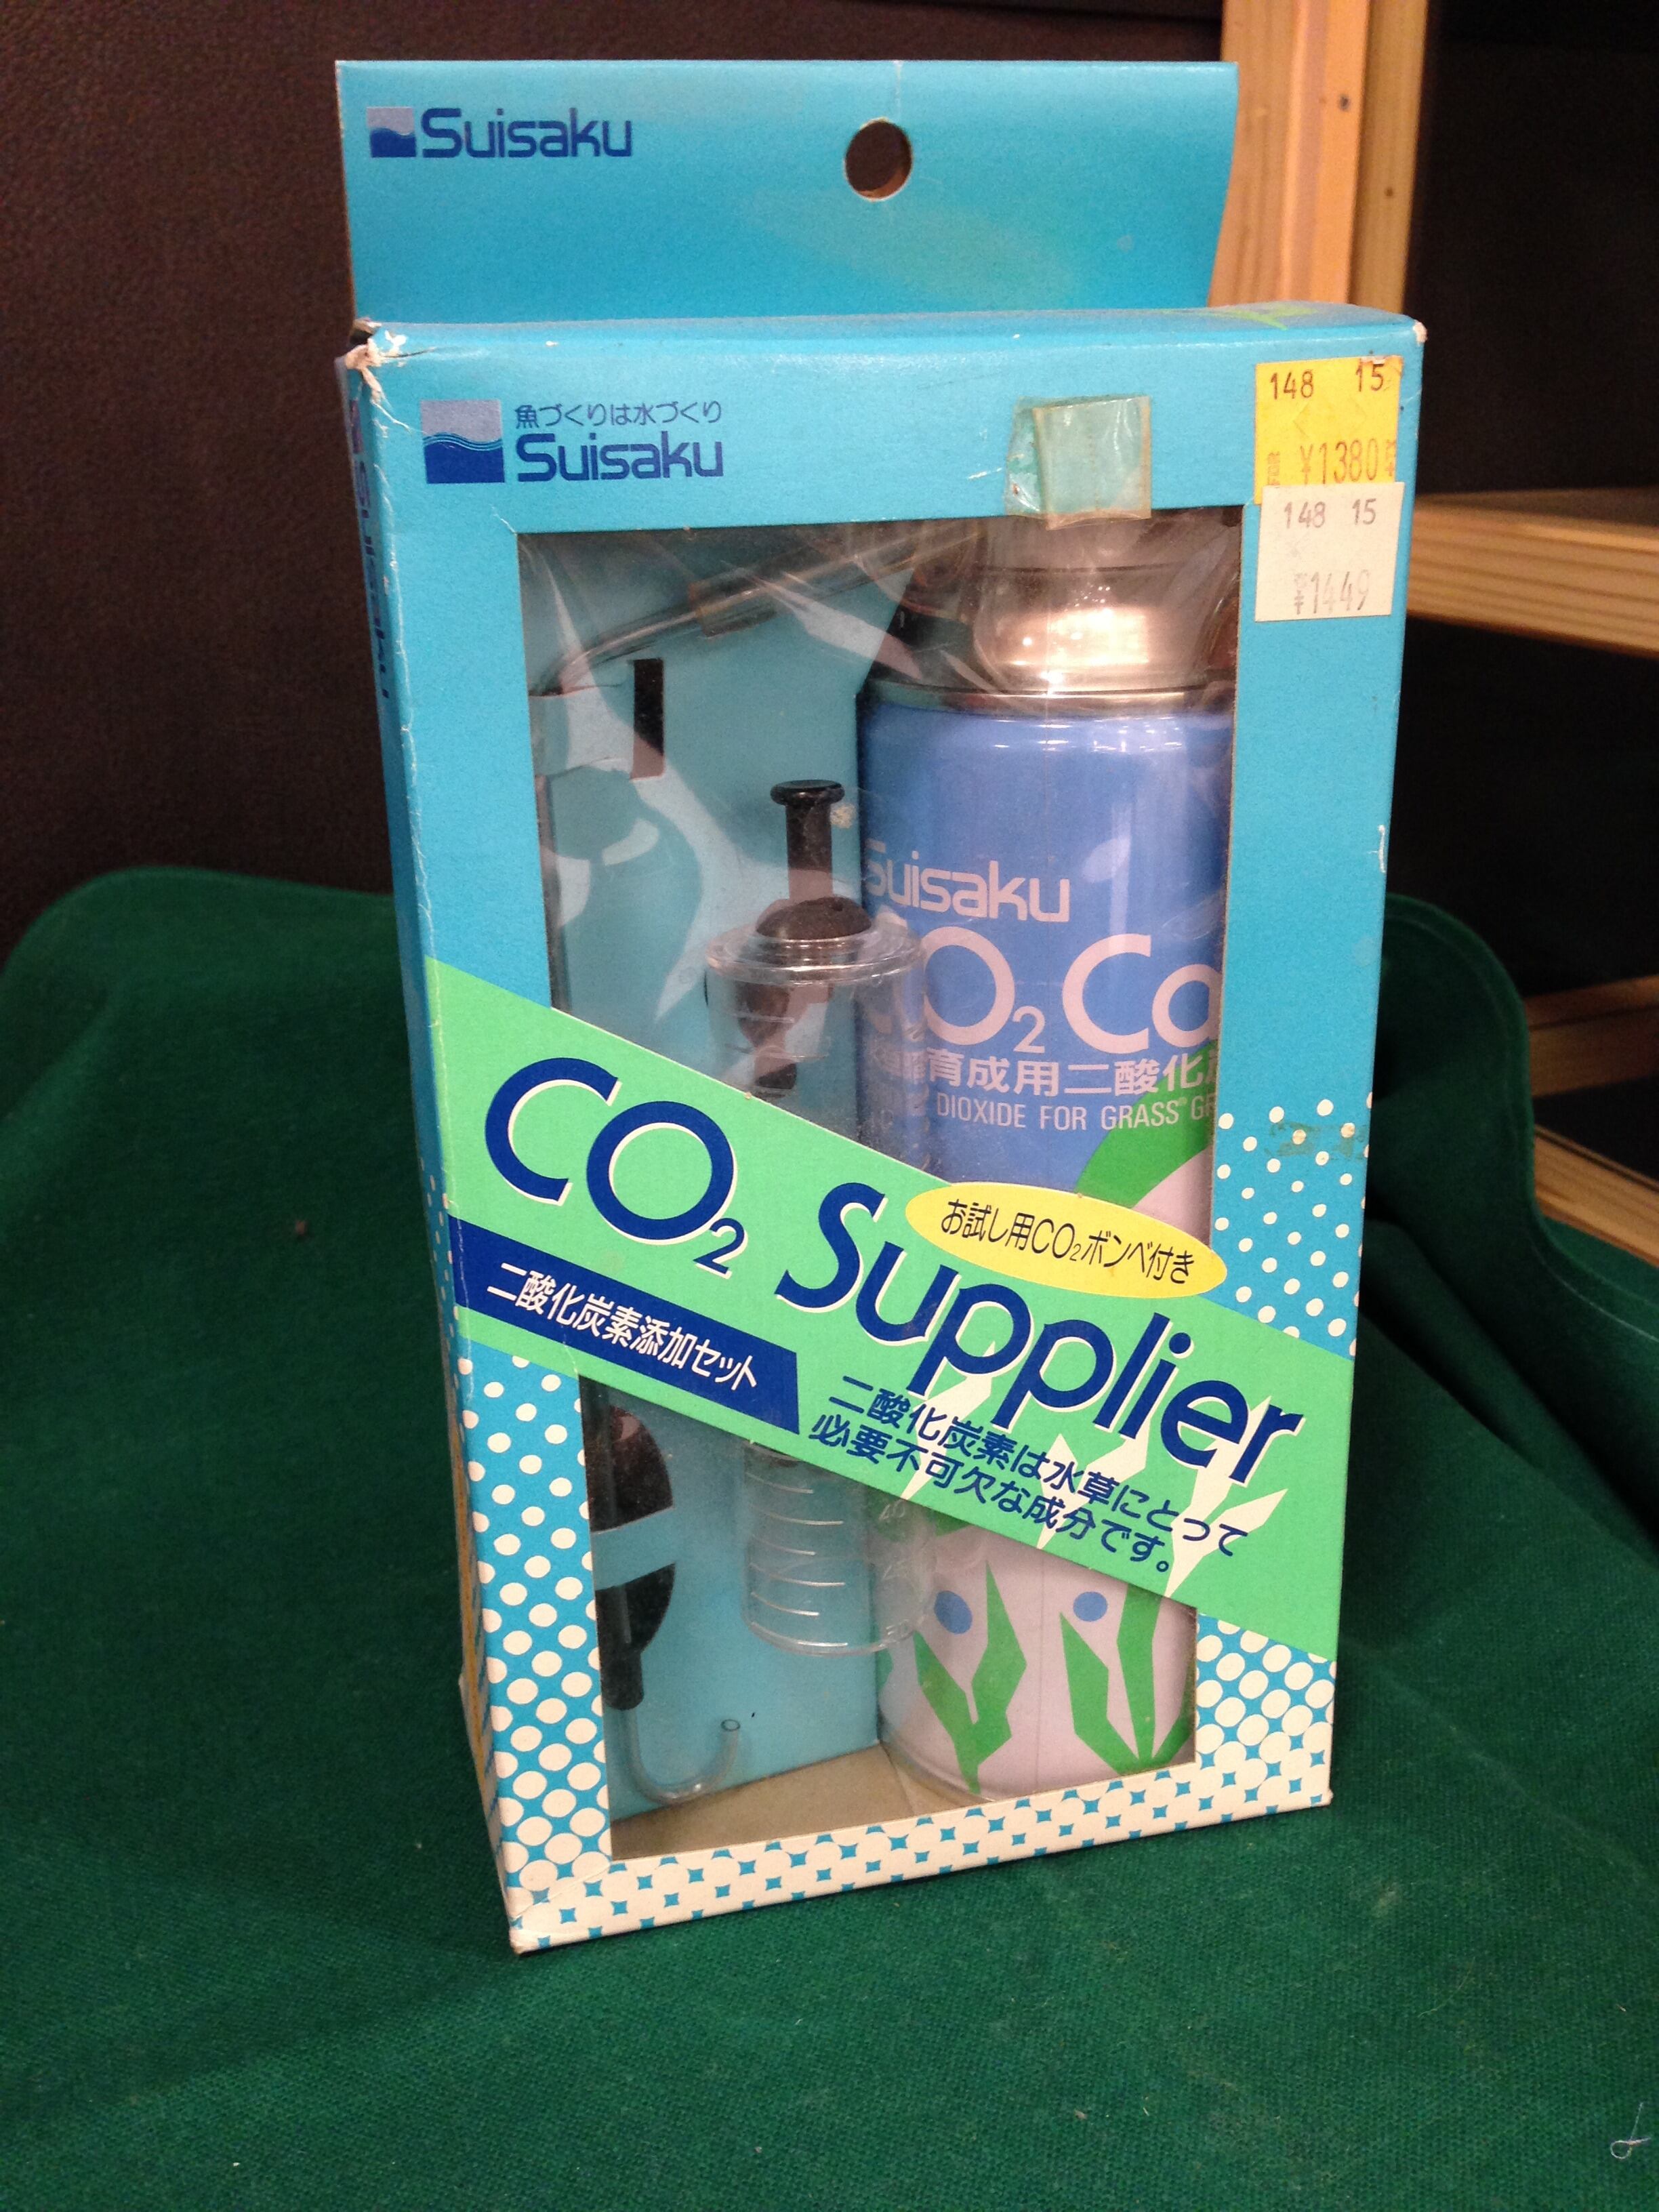 二酸化炭素添加セット Suisaku Co2 Supplier 新品未使用 在庫処分 セン アウトレット 売切御免 返品不可のアウトレットアイテム激安ショップ